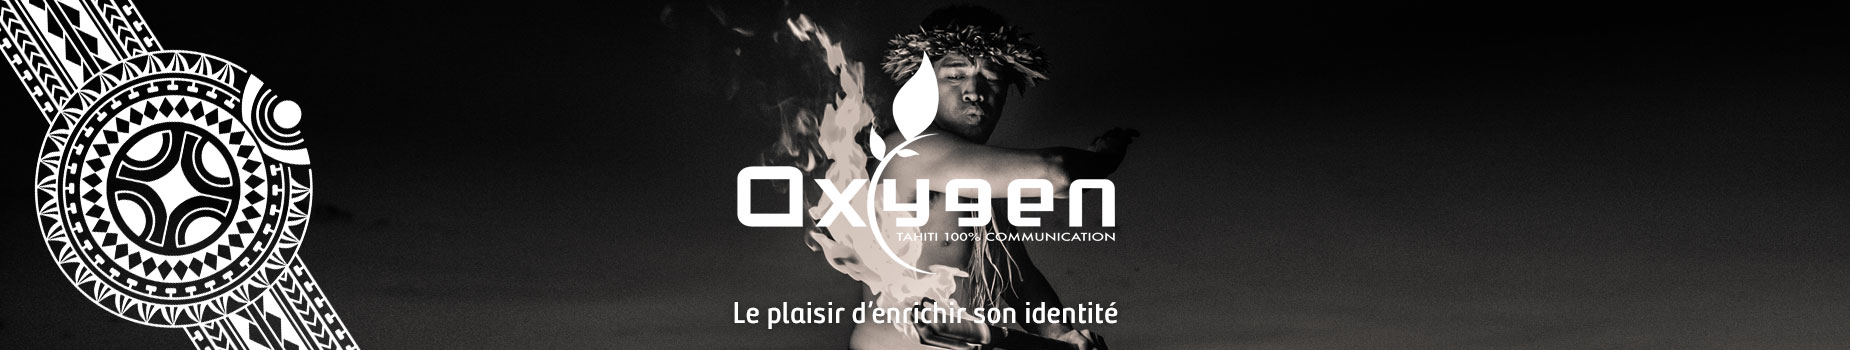 bandeaux-web-oxygen-new-4